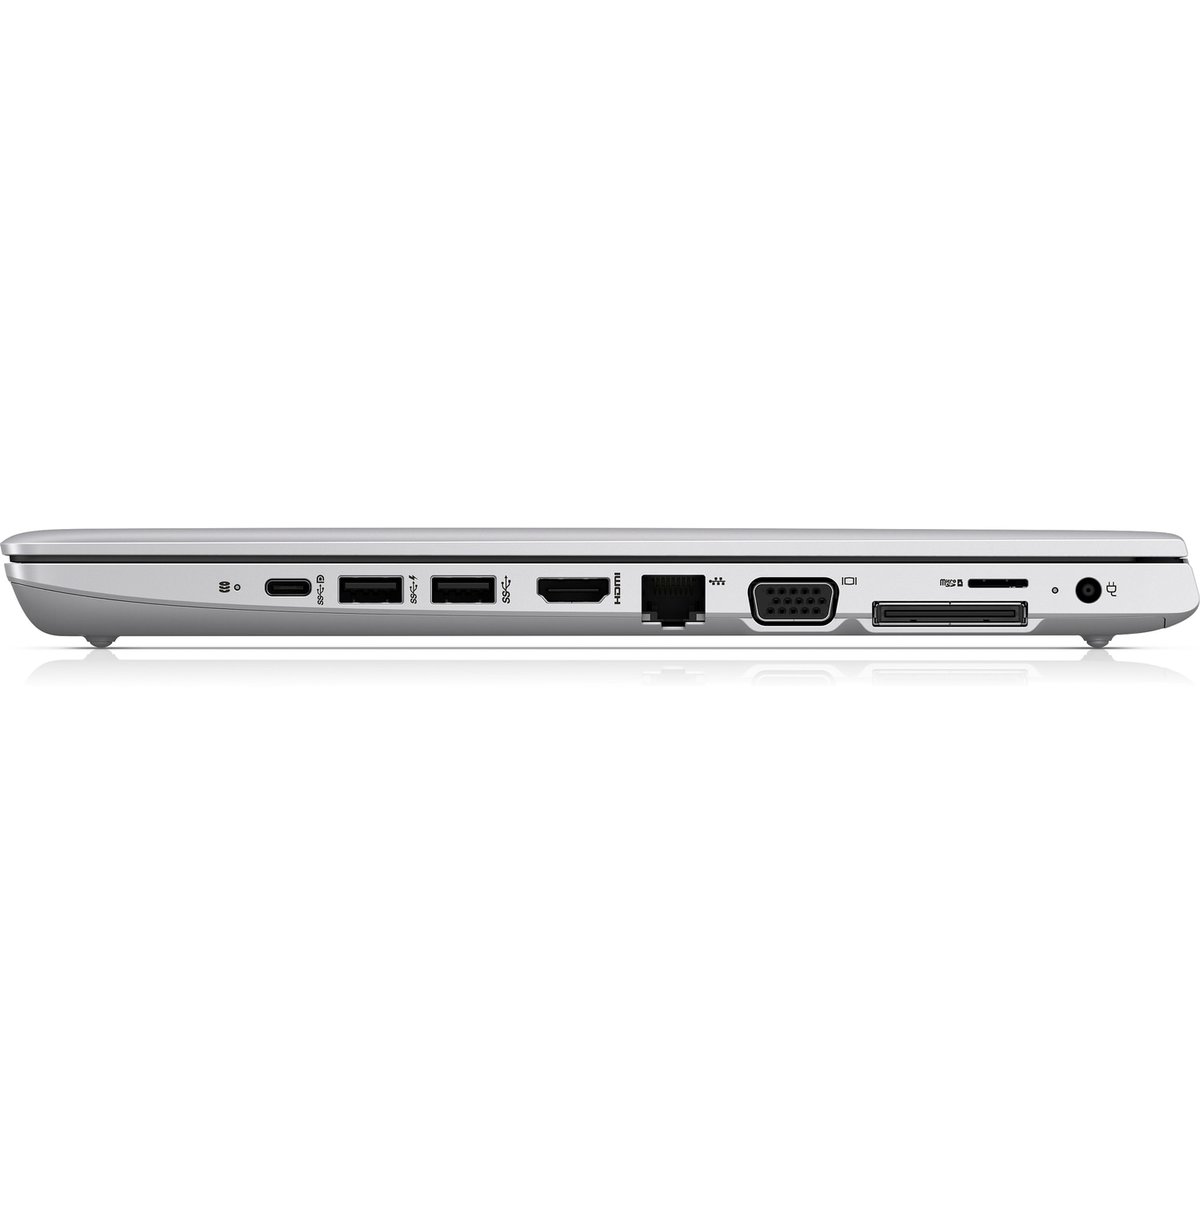 HP ProBook 640 G4